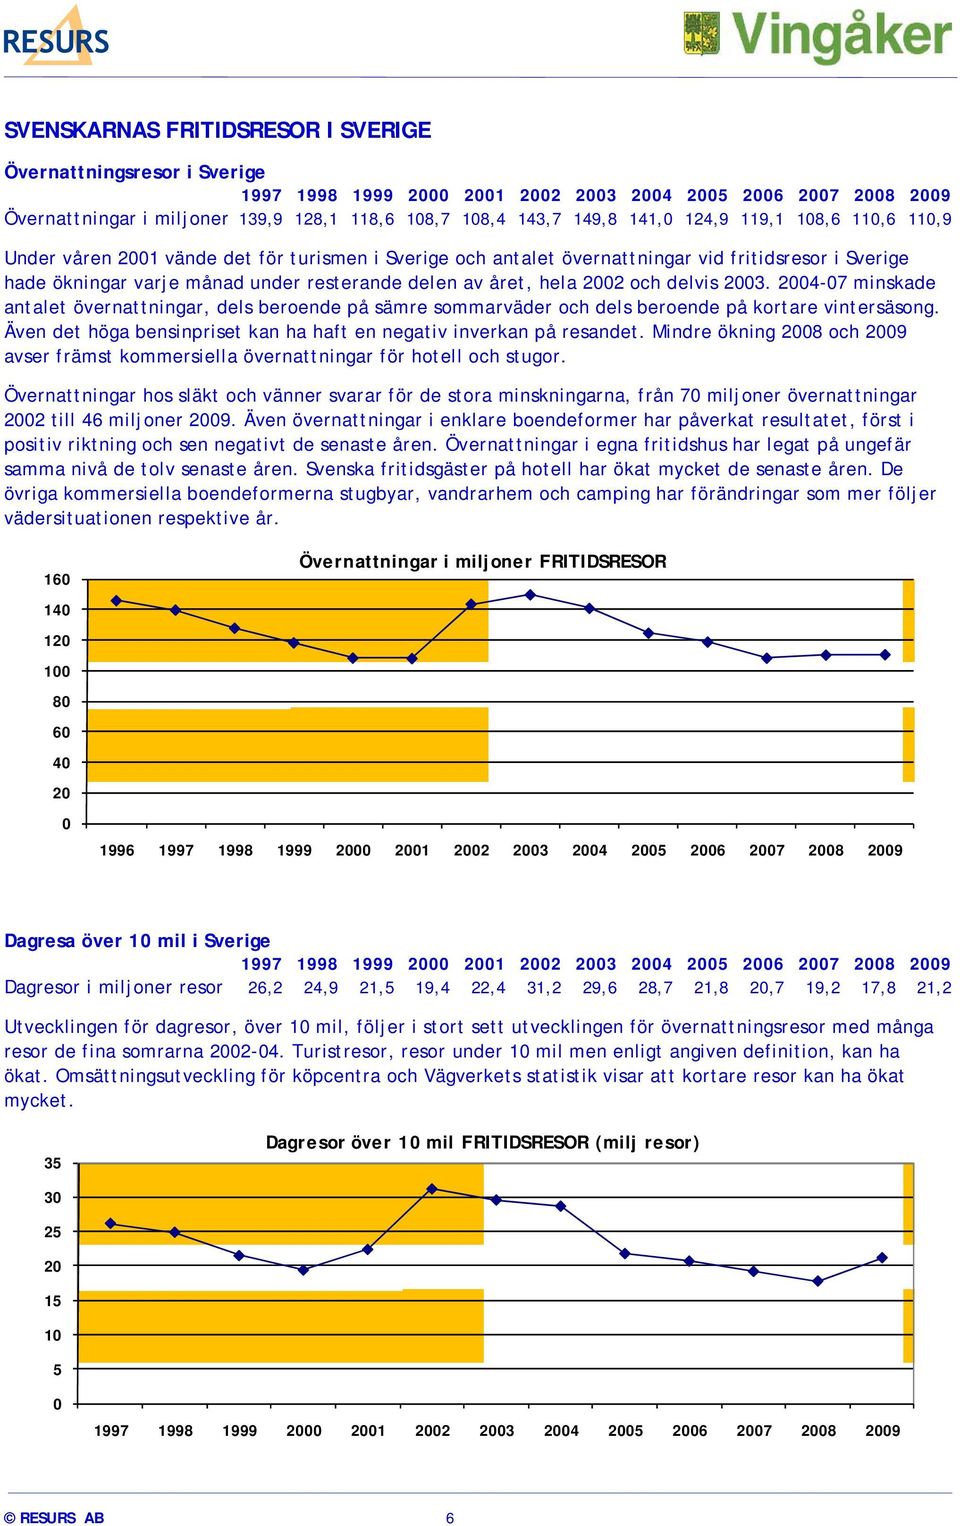 hela 2002 och delvis 2003. 2004-07 minskade antalet övernattningar, dels beroende på sämre sommarväder och dels beroende på kortare vintersäsong.